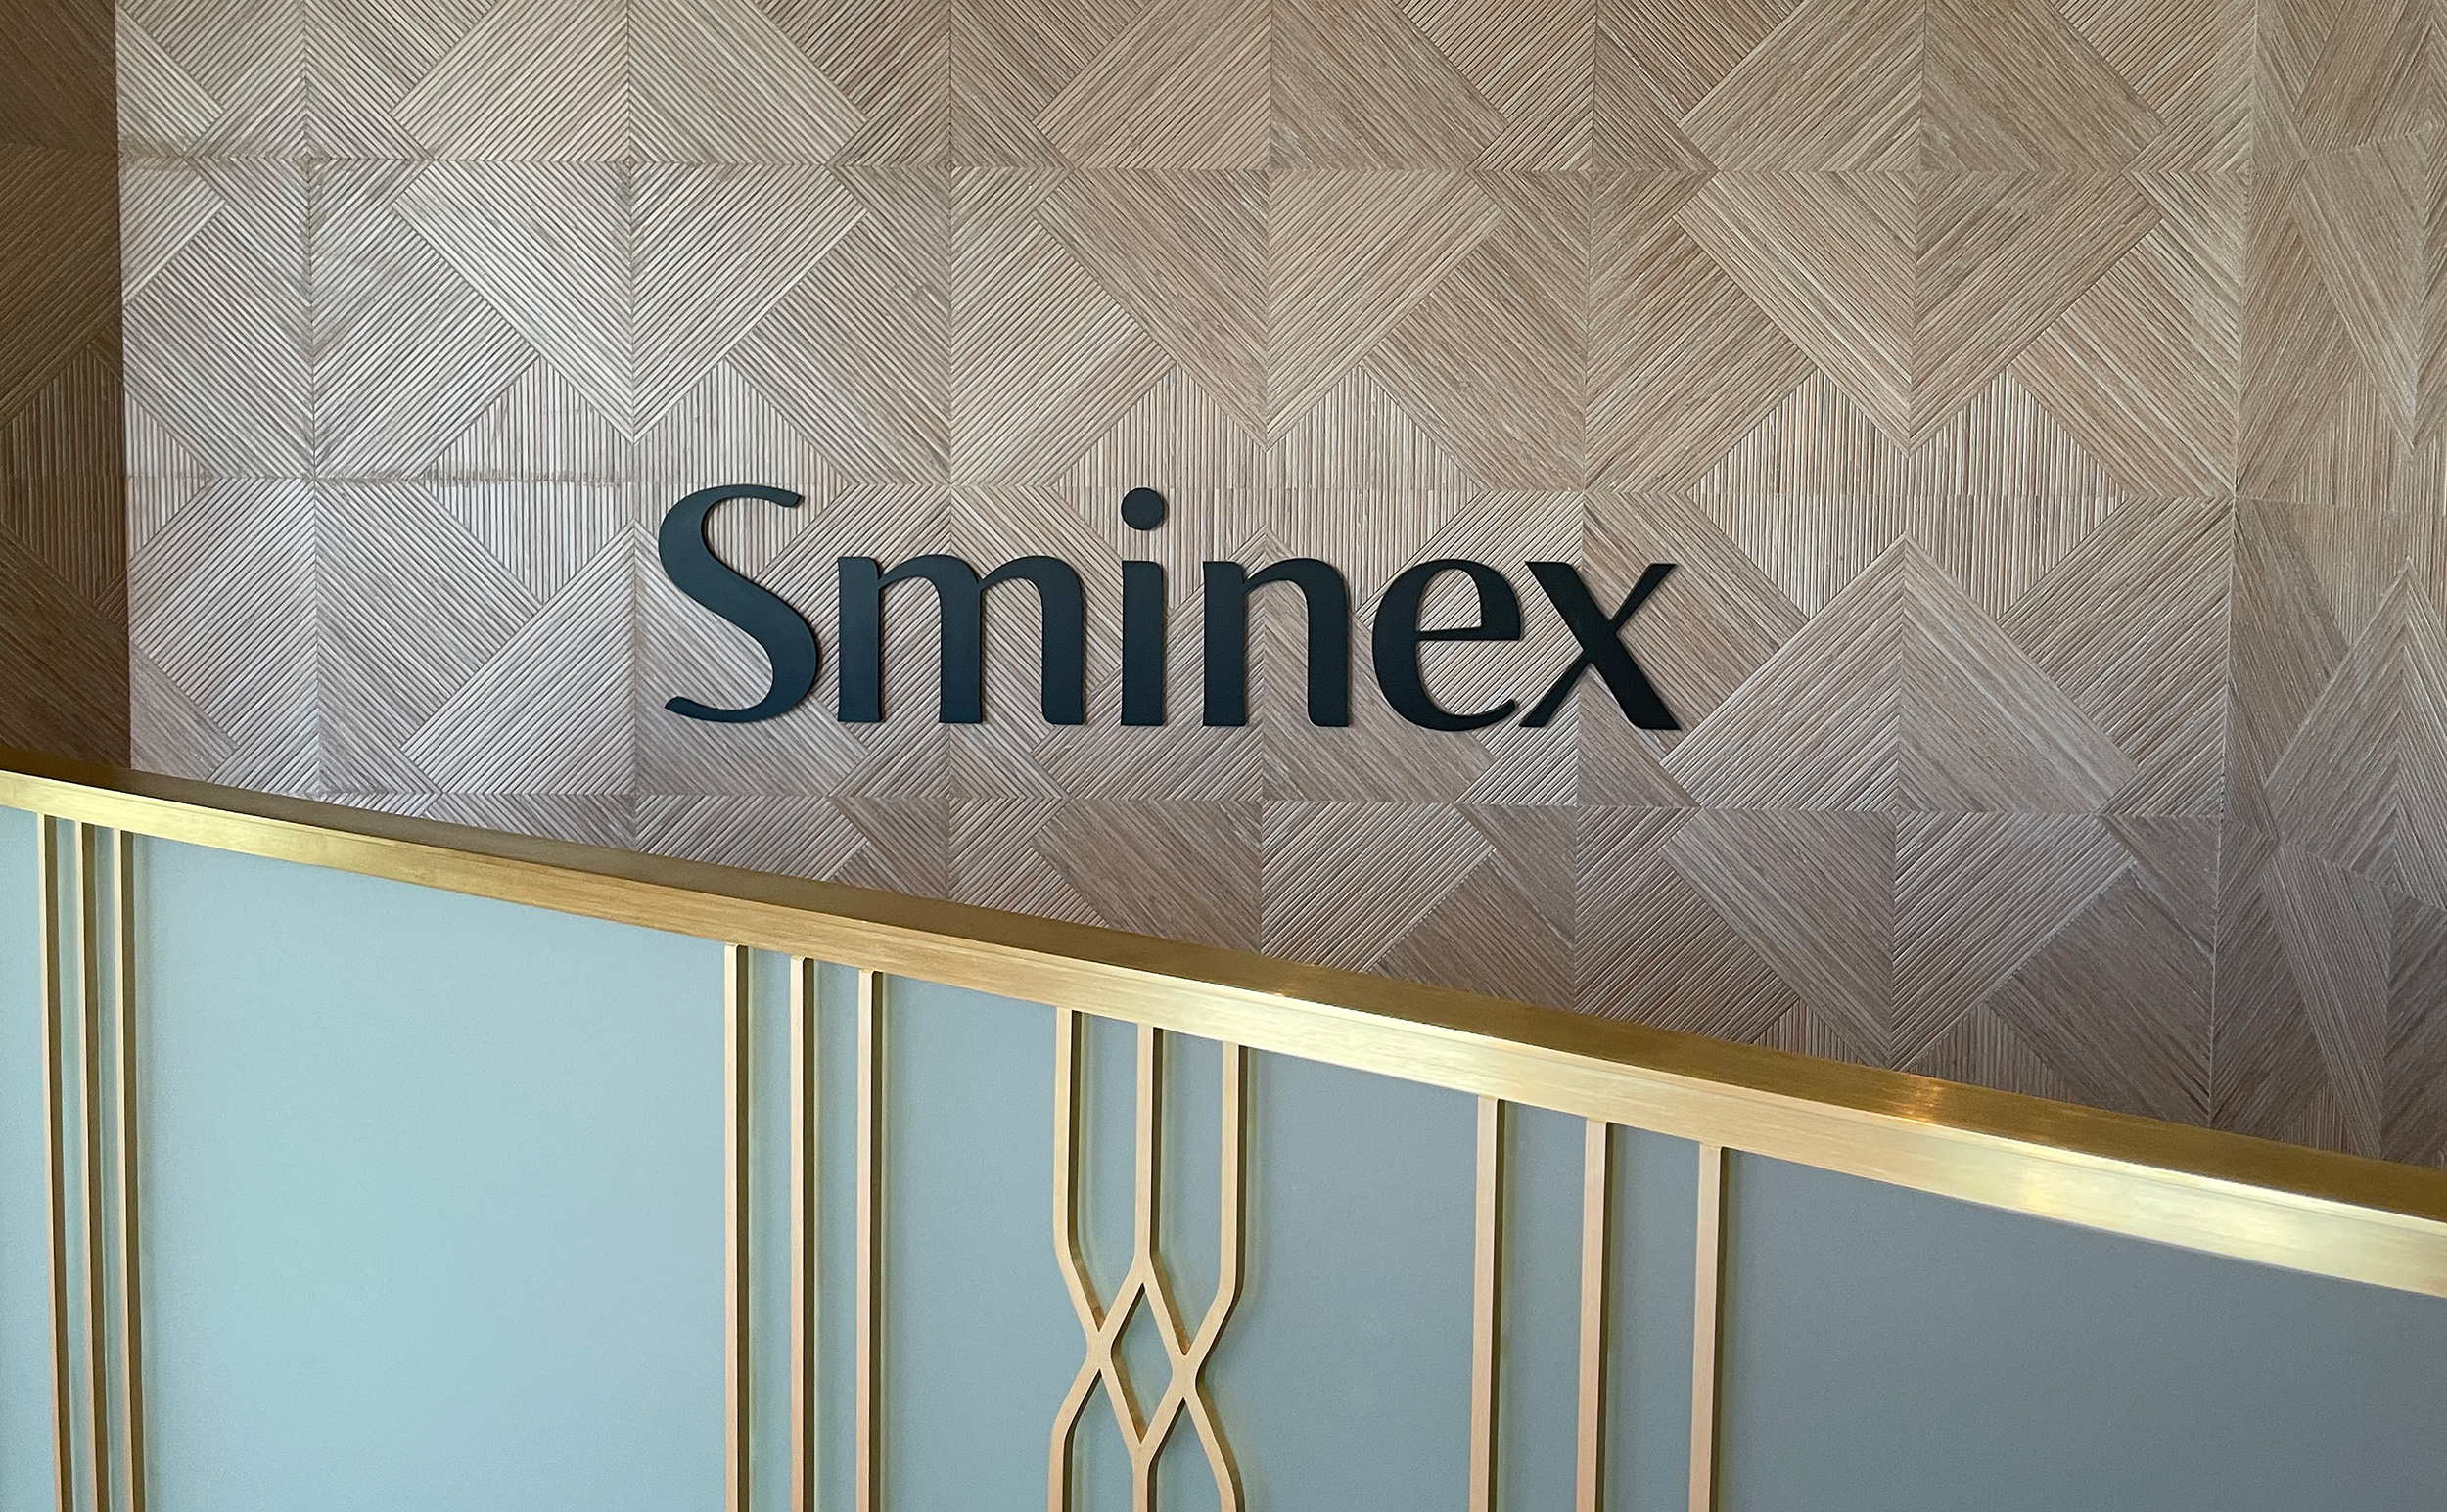 Sminex вакансии. Sminex Интеко. Sminex Интеко логотип. Смайнекс офис. Sminex проекты.